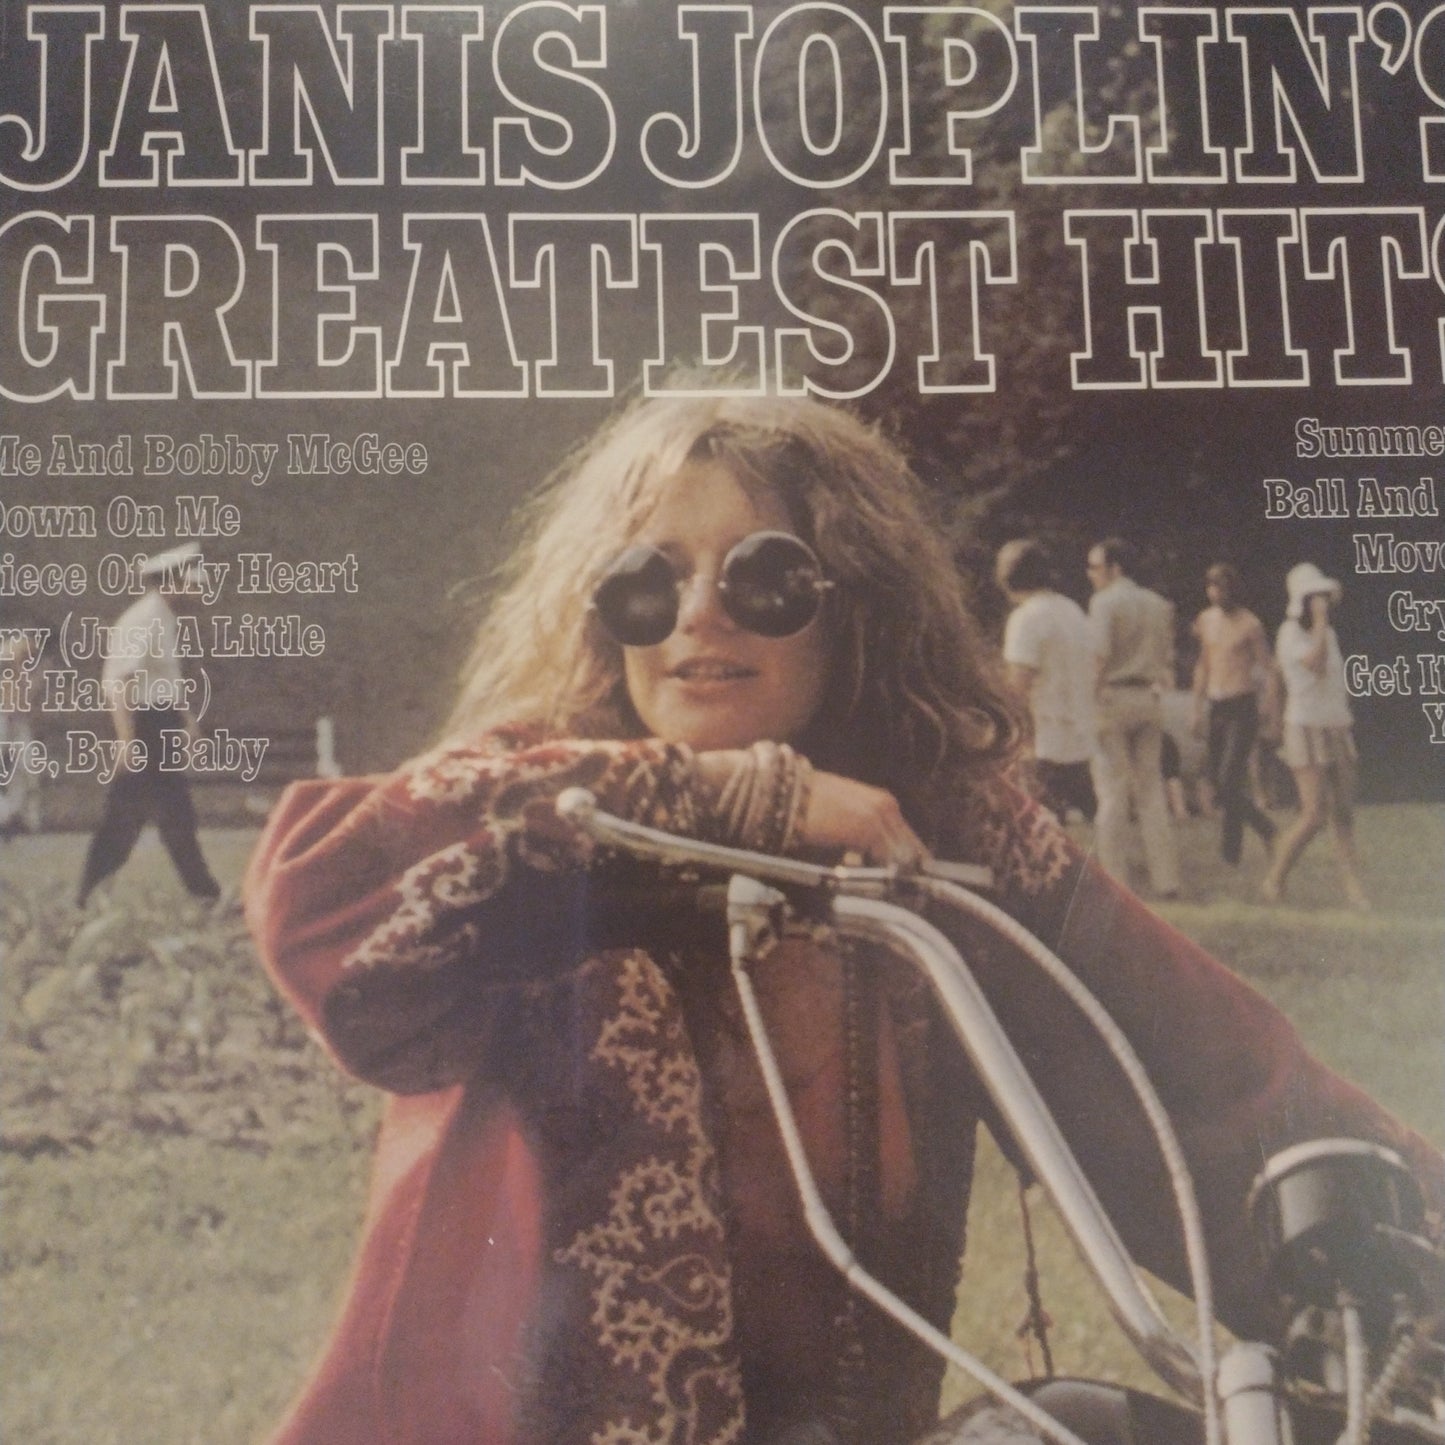 Janis Joplin greatest hits lp